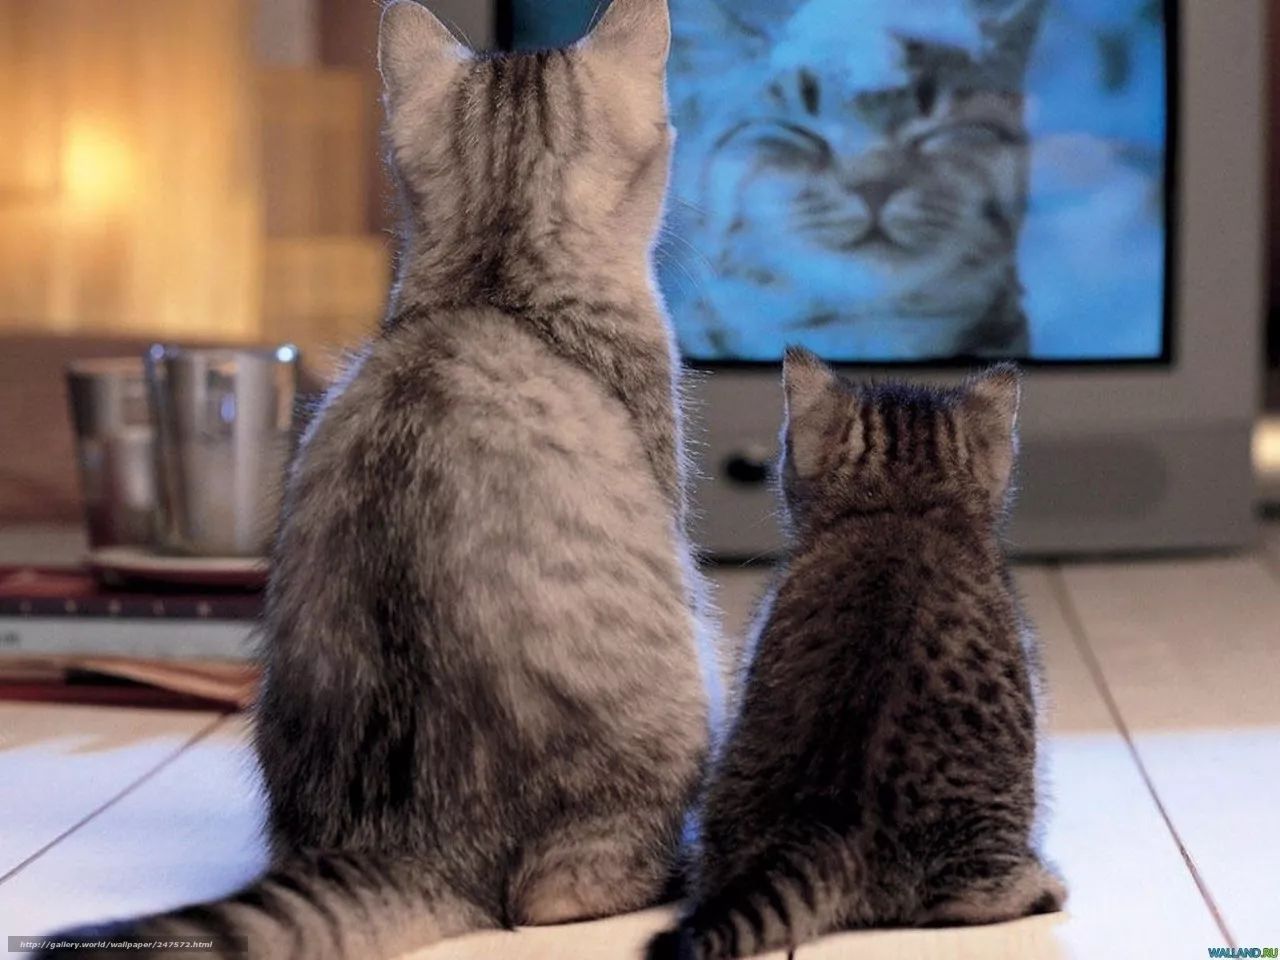 猫和狗真的在看电视吗ta们真的看懂了吗